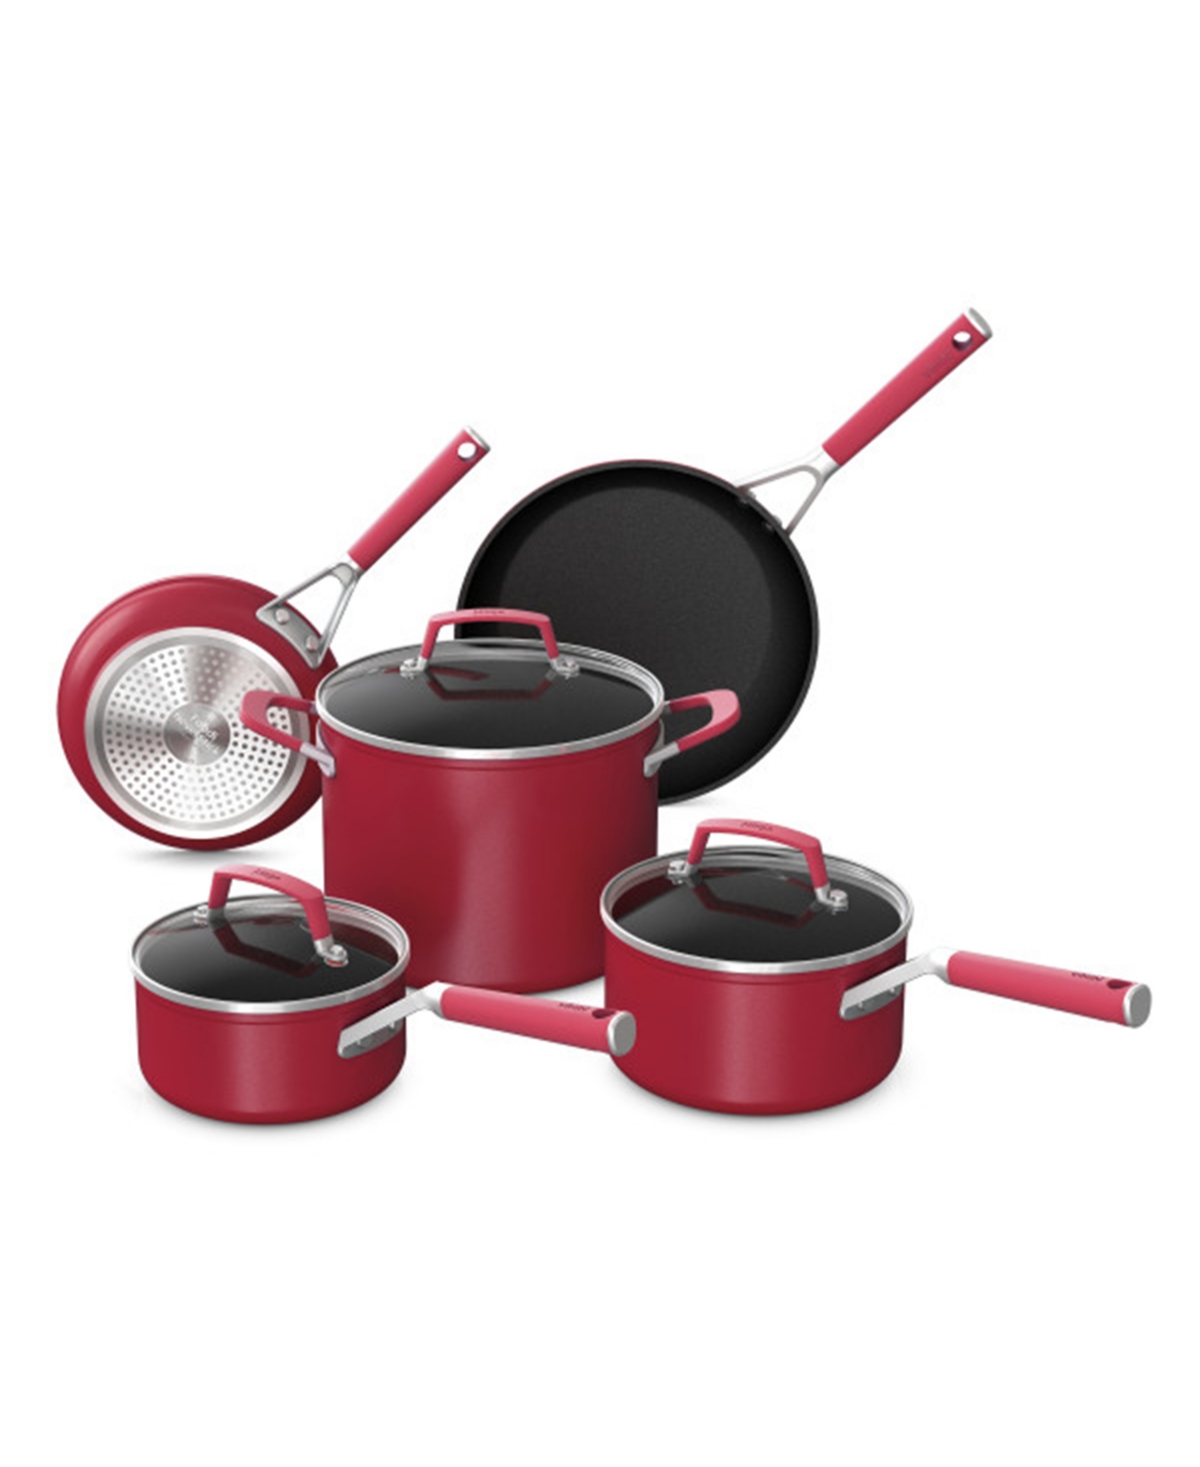 Sharkninja Stainless-steel 8-piece C28000 Foodi Neverstick Vivid Cookware Set In Red